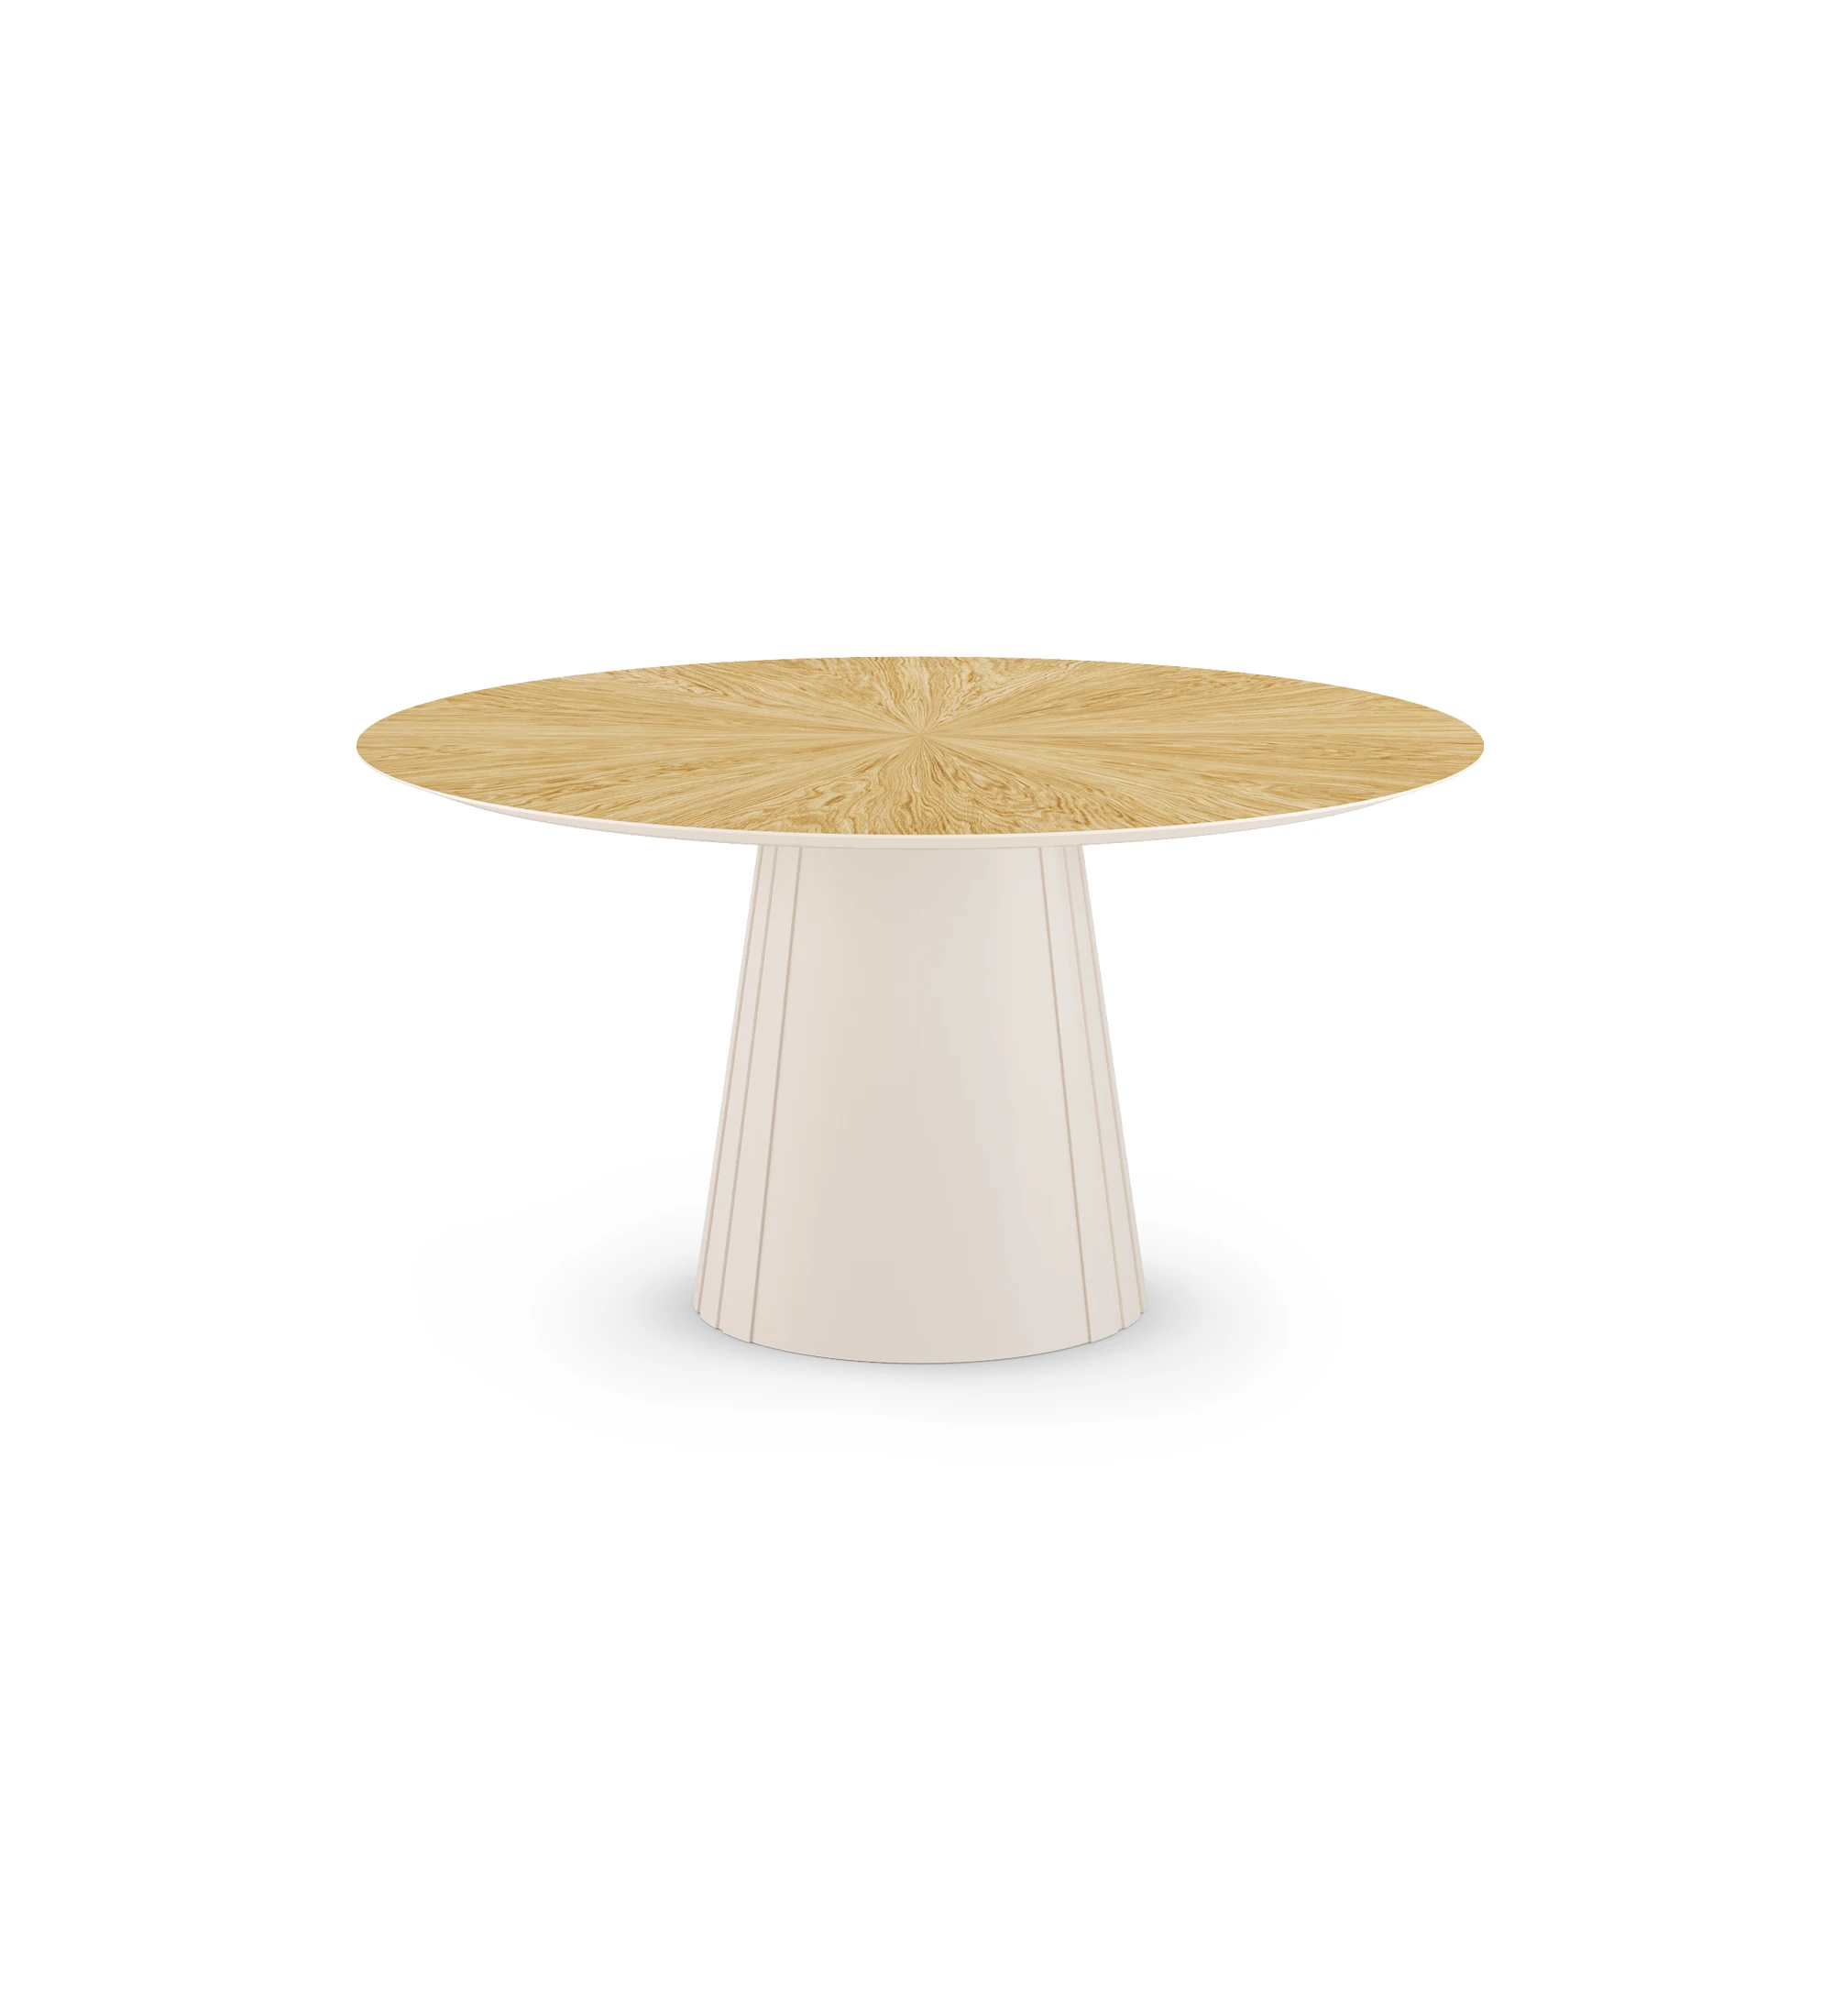 Table de repas ronde Cannes Ø 150 cm, plateau en chêne naturel, pied laqué perle.